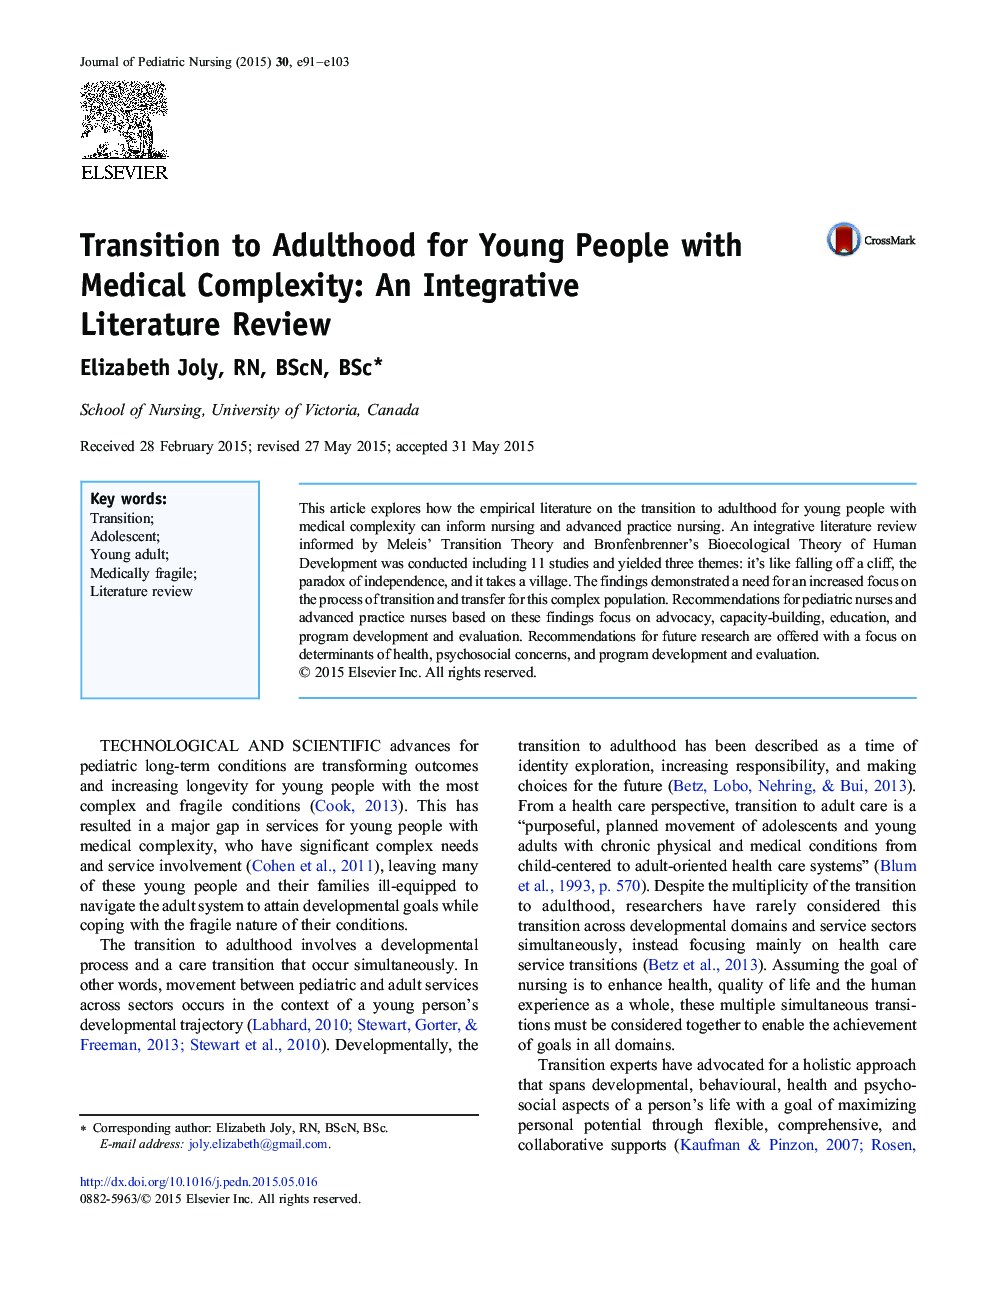 انتقال به بزرگسالی برای نسل جوان با پیچیدگی پزشکی: یک ادبیات نقد و بررسی یکپارچه 